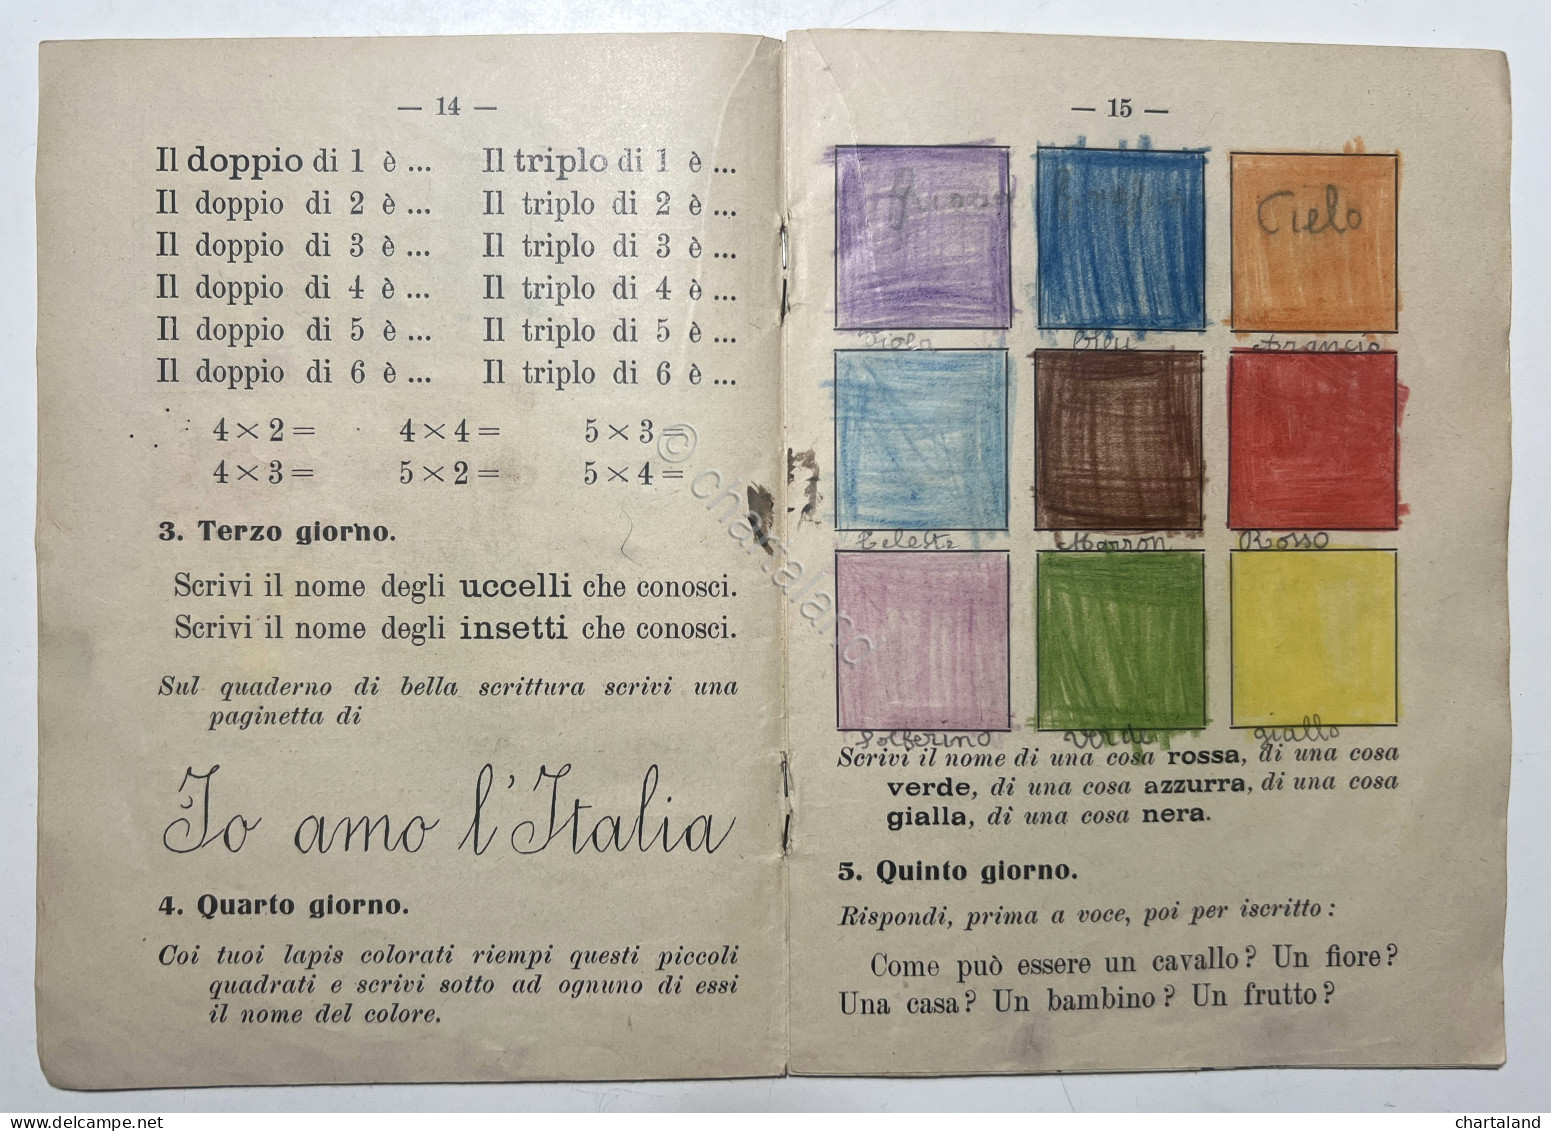 Libri Ragazzi - A. Plata - Compiti Per Le Vacanze: Classe Prima - Ed. 1933 - Autres & Non Classés